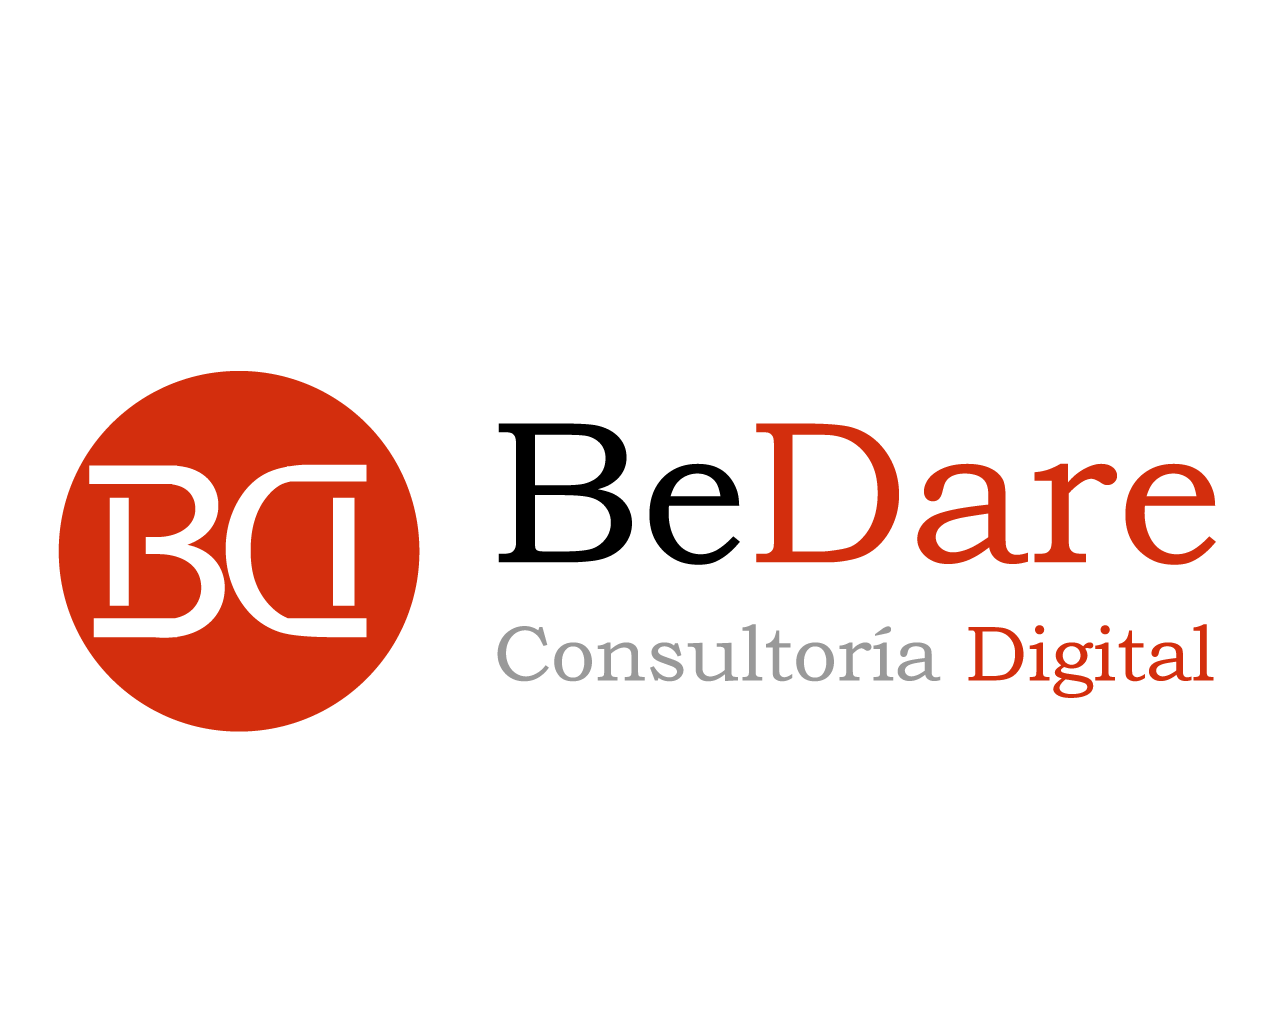 Be Dare Consultoria Digital